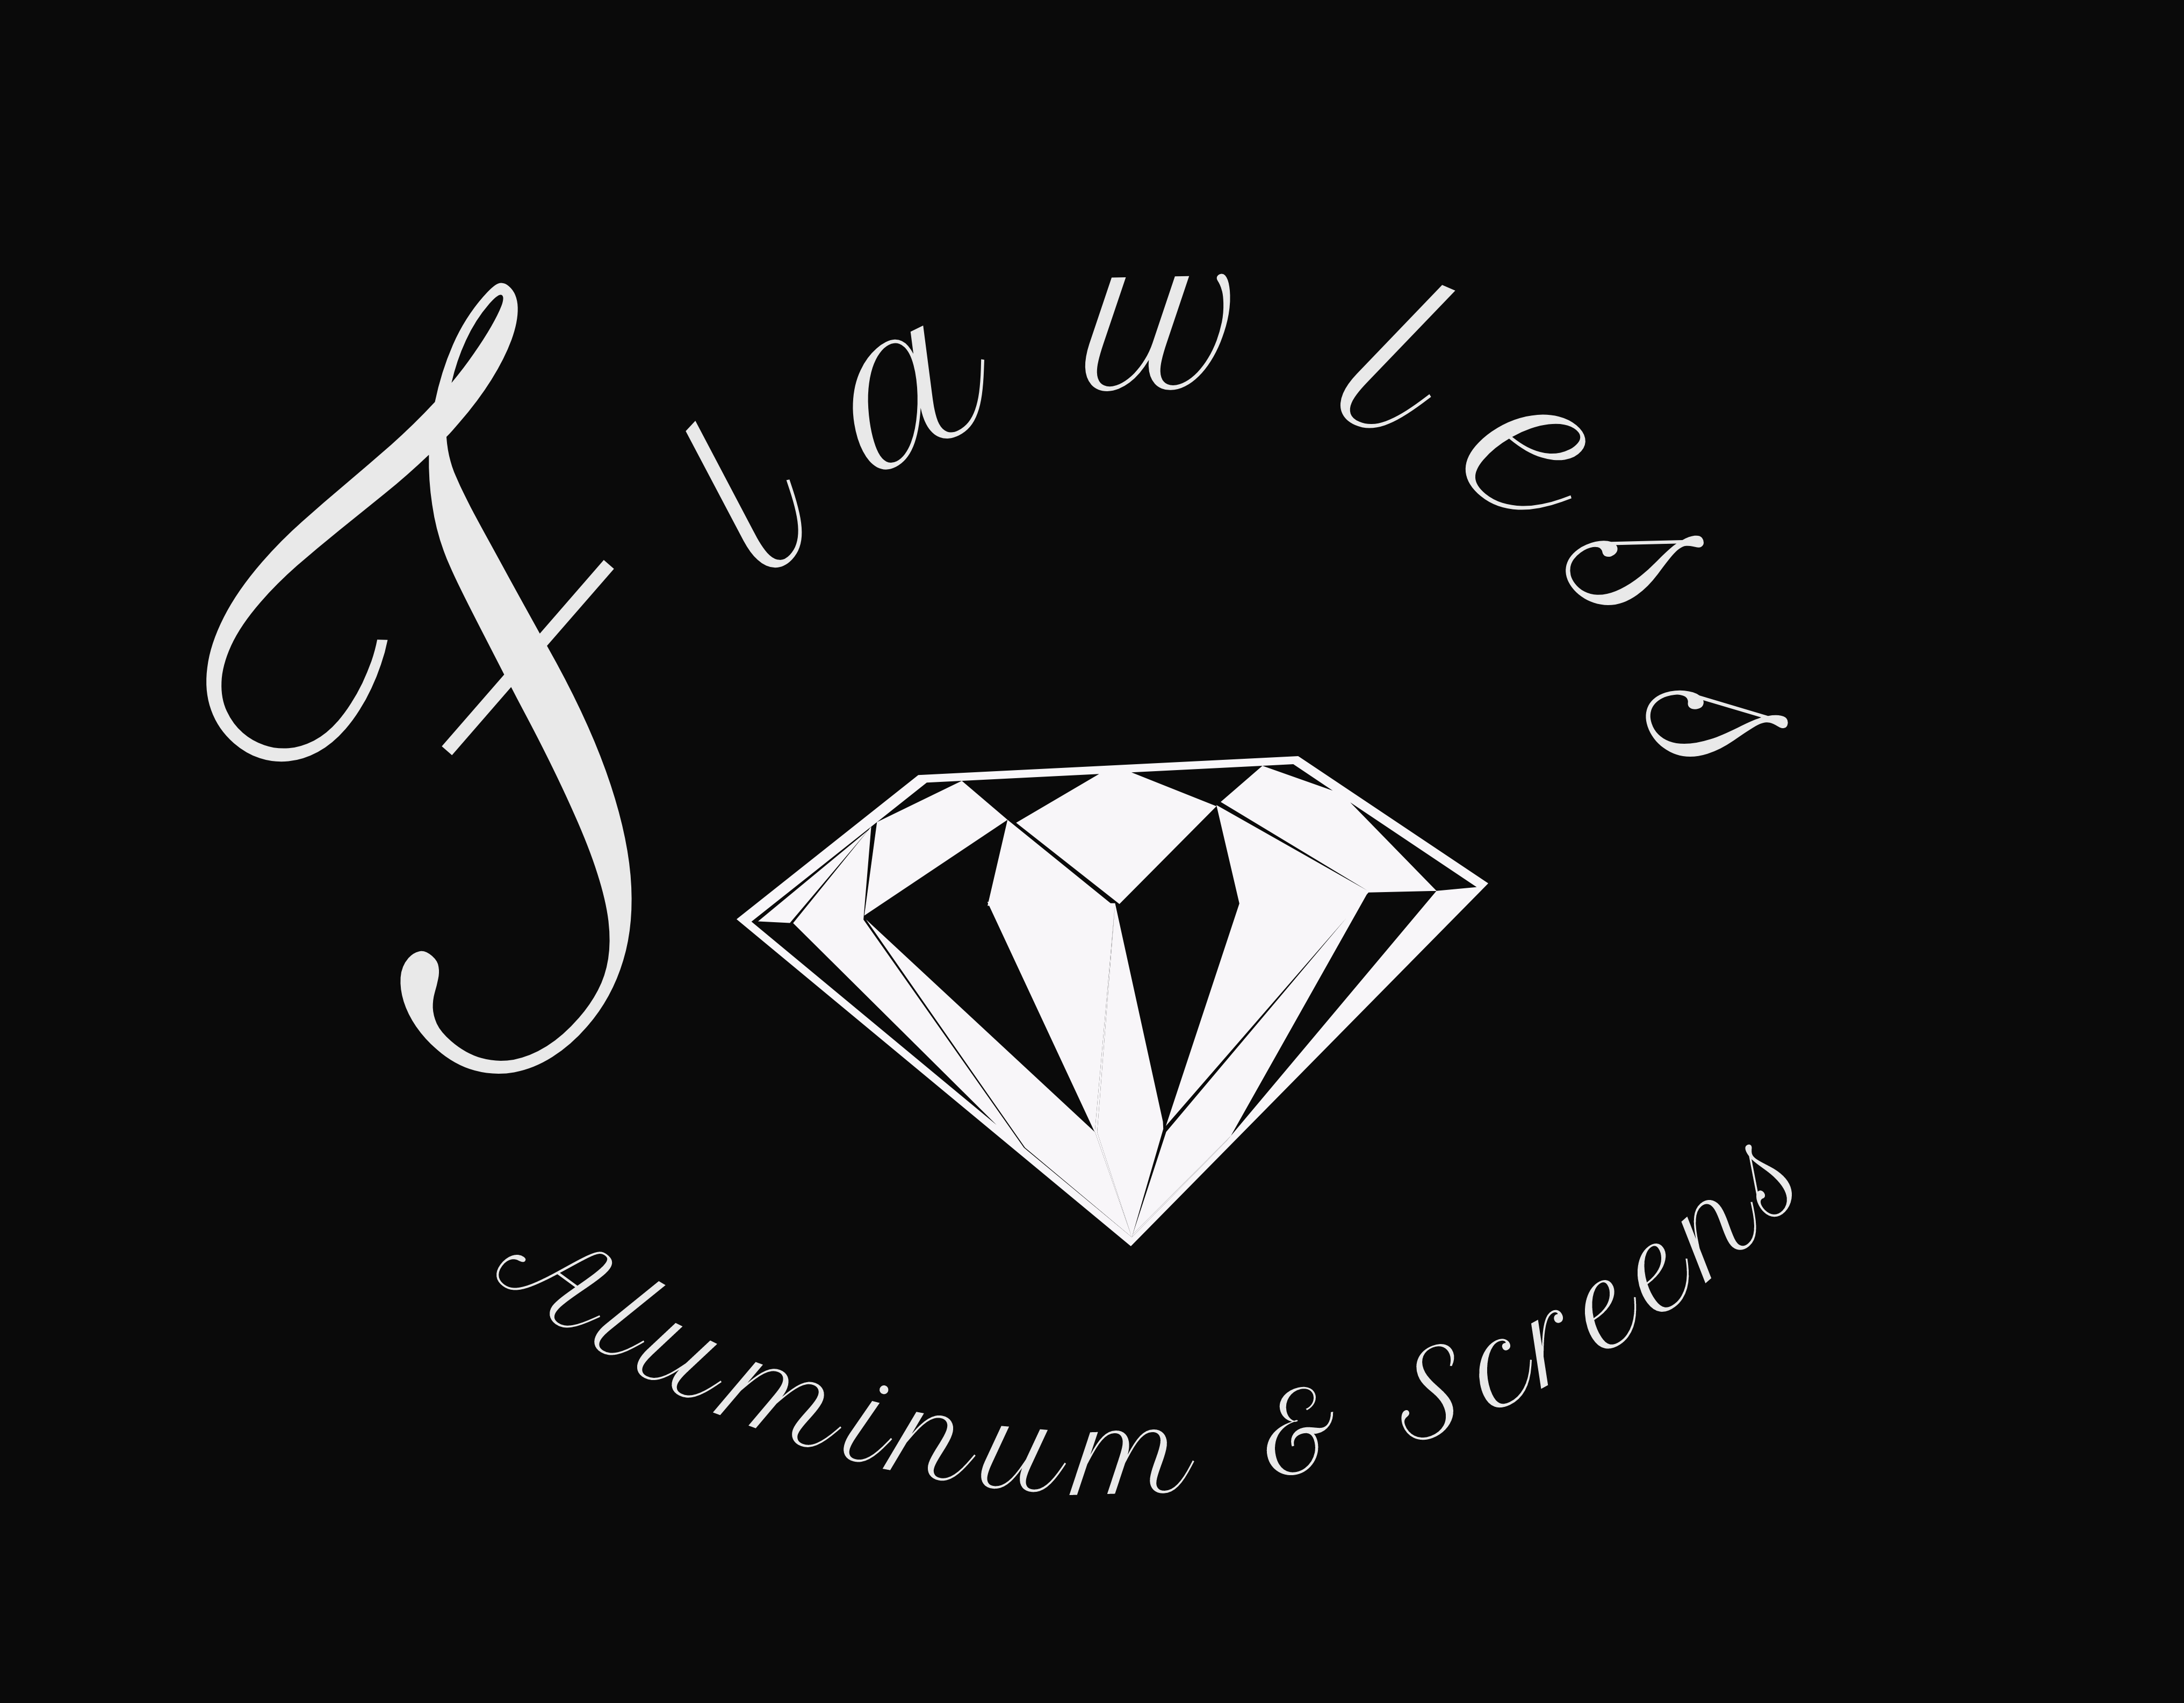 Flawless aluminum screens logo